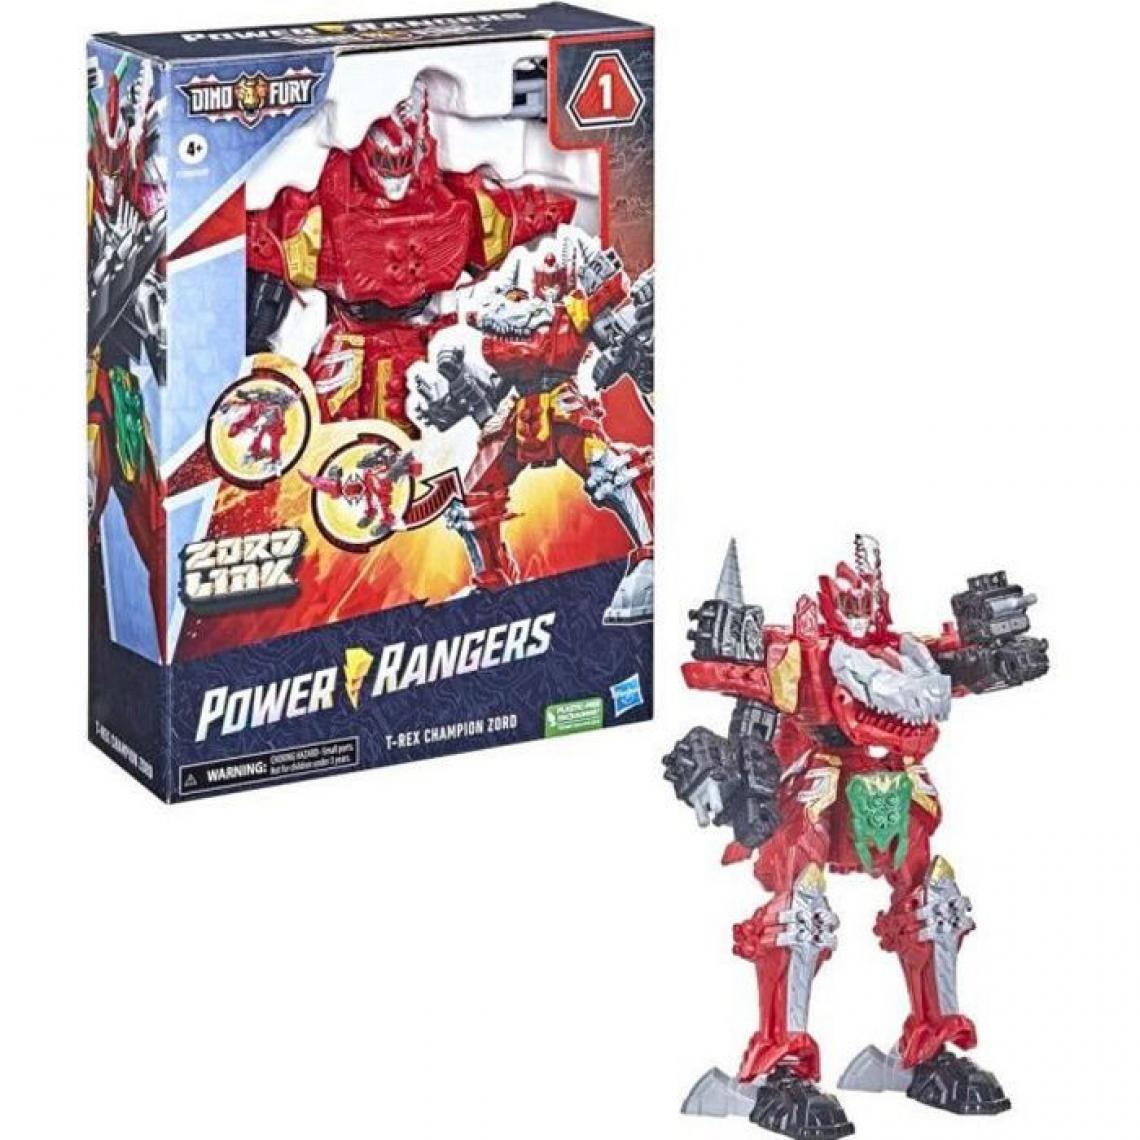 Hasbro - POWER RANGERS - Dino Fury - T-Rex Champion Zord, Zord robot dinosaure avec systeme d'assemblage pour combiner Zord Link - Films et séries